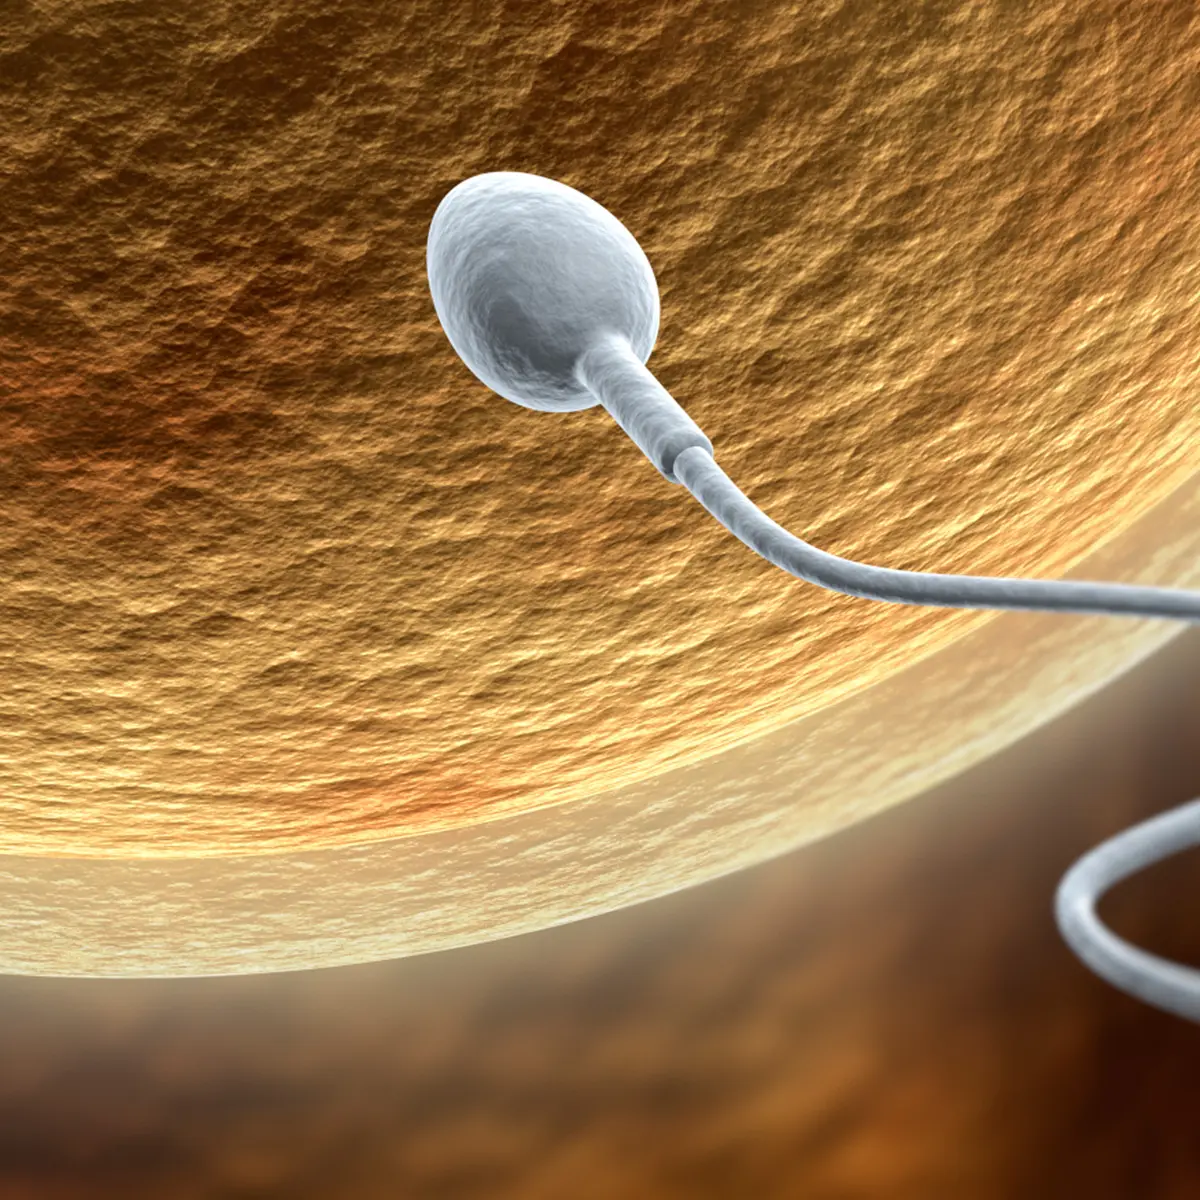 Ngentot Tante Ngajari 2 Anaknya Ngentot Masih Sd - Terlalu Royal Membuang Sperma, Awas Kena Spermatorrhea - Health Liputan6.com